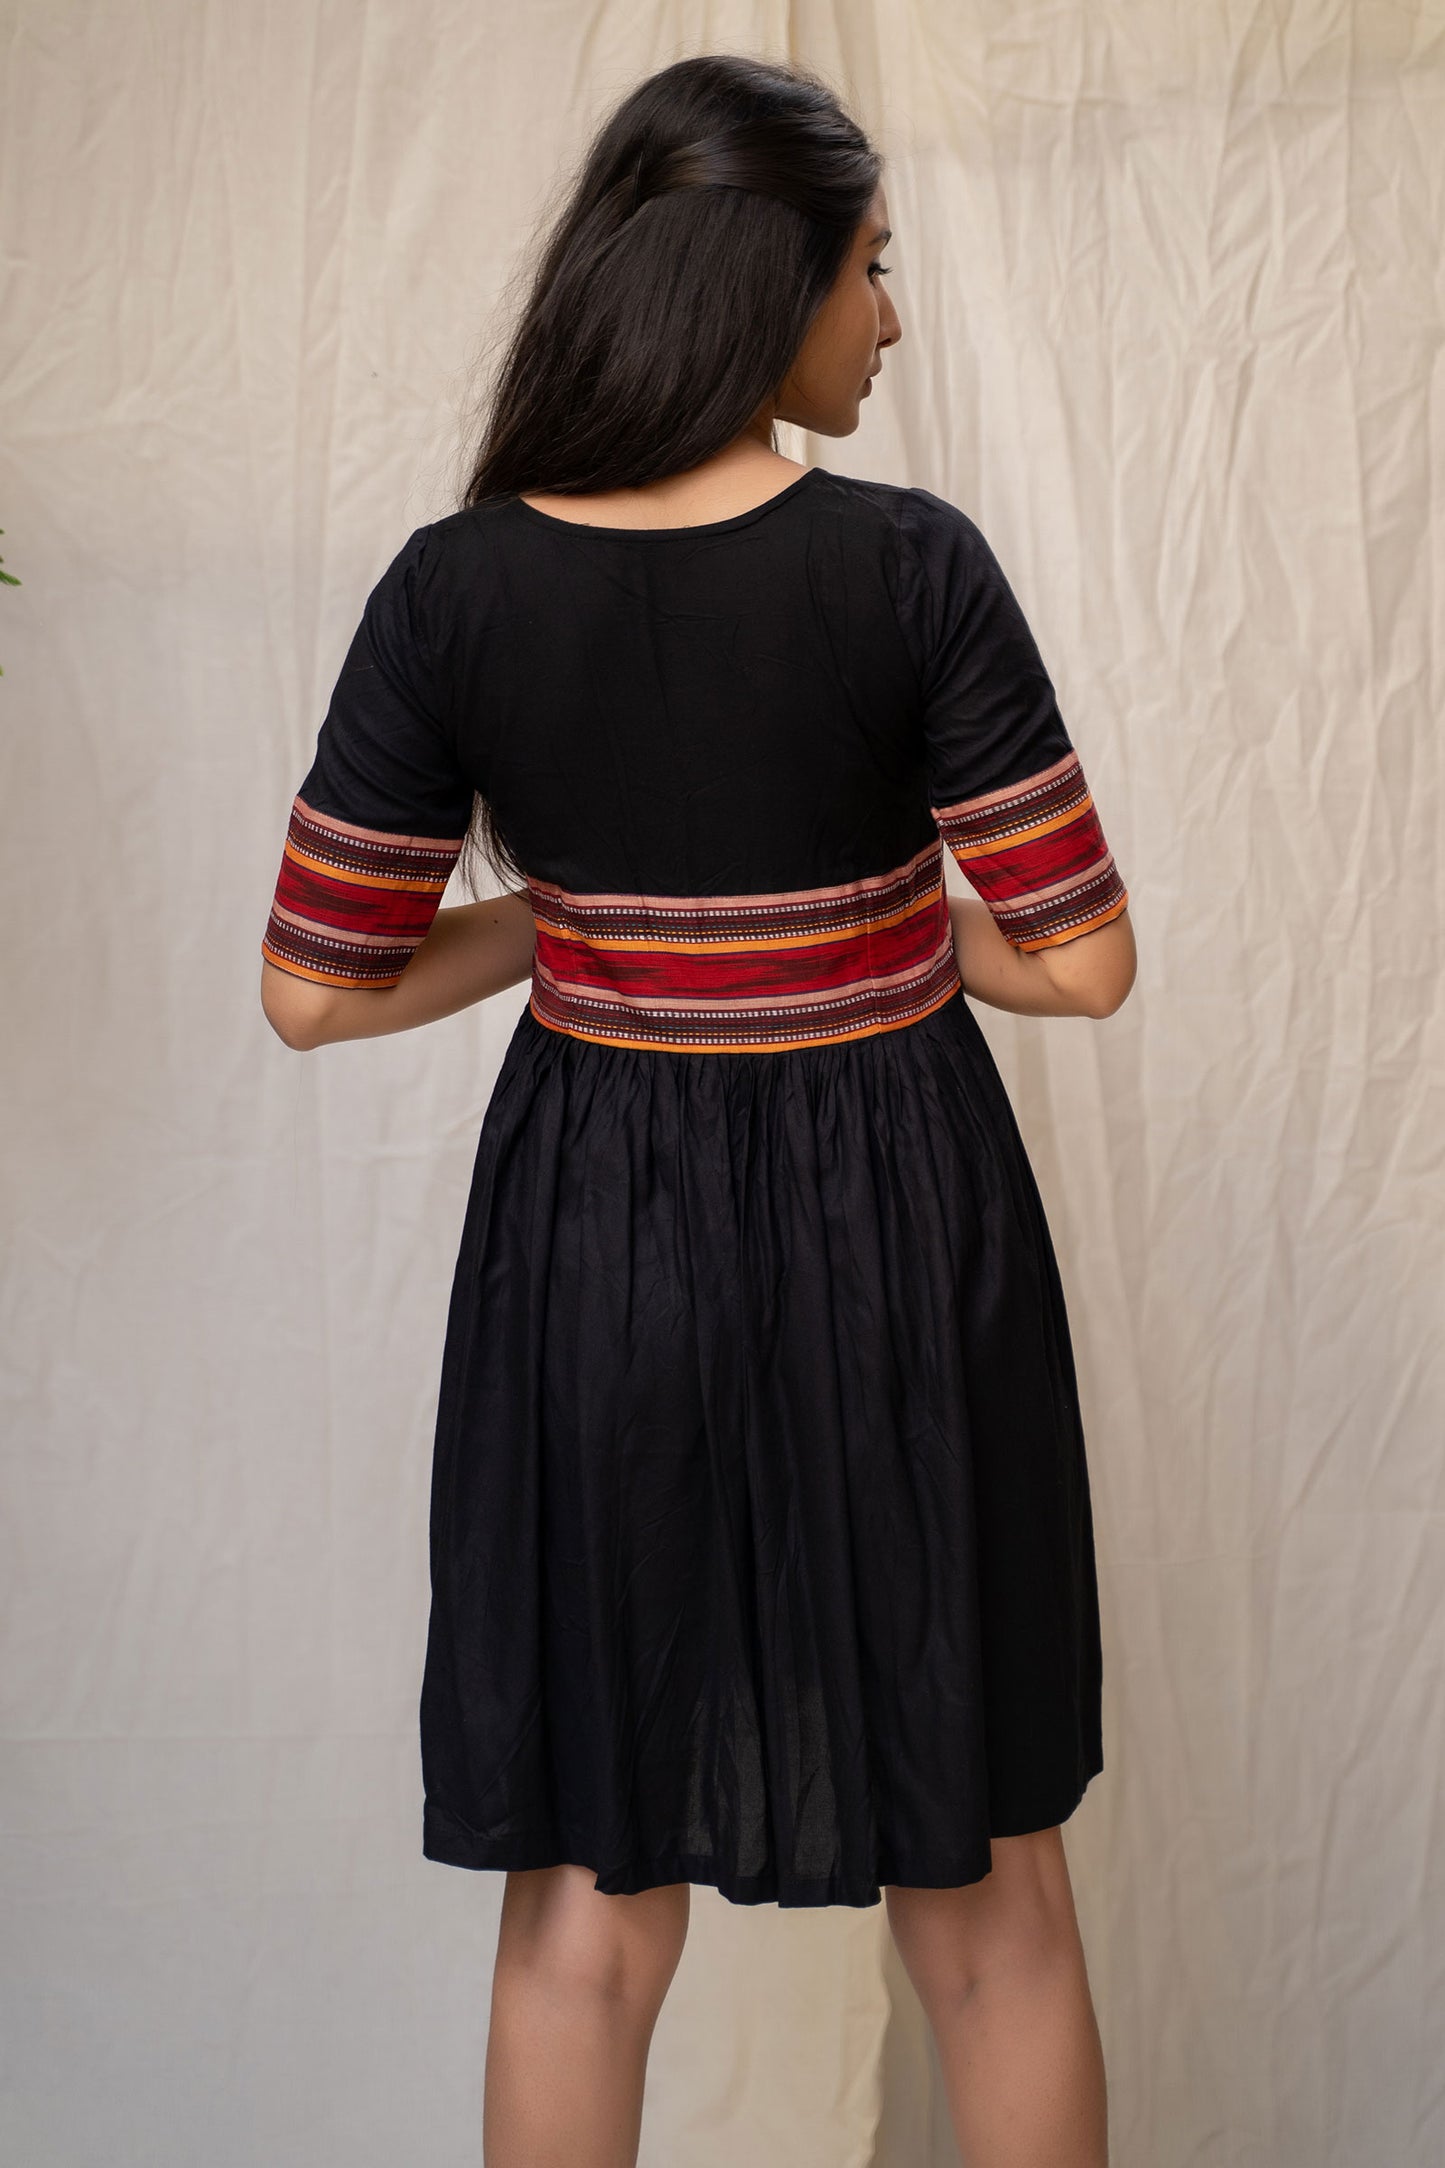 
                  
                    Black Cotton Pleated Dress - Tantu 
                  
                